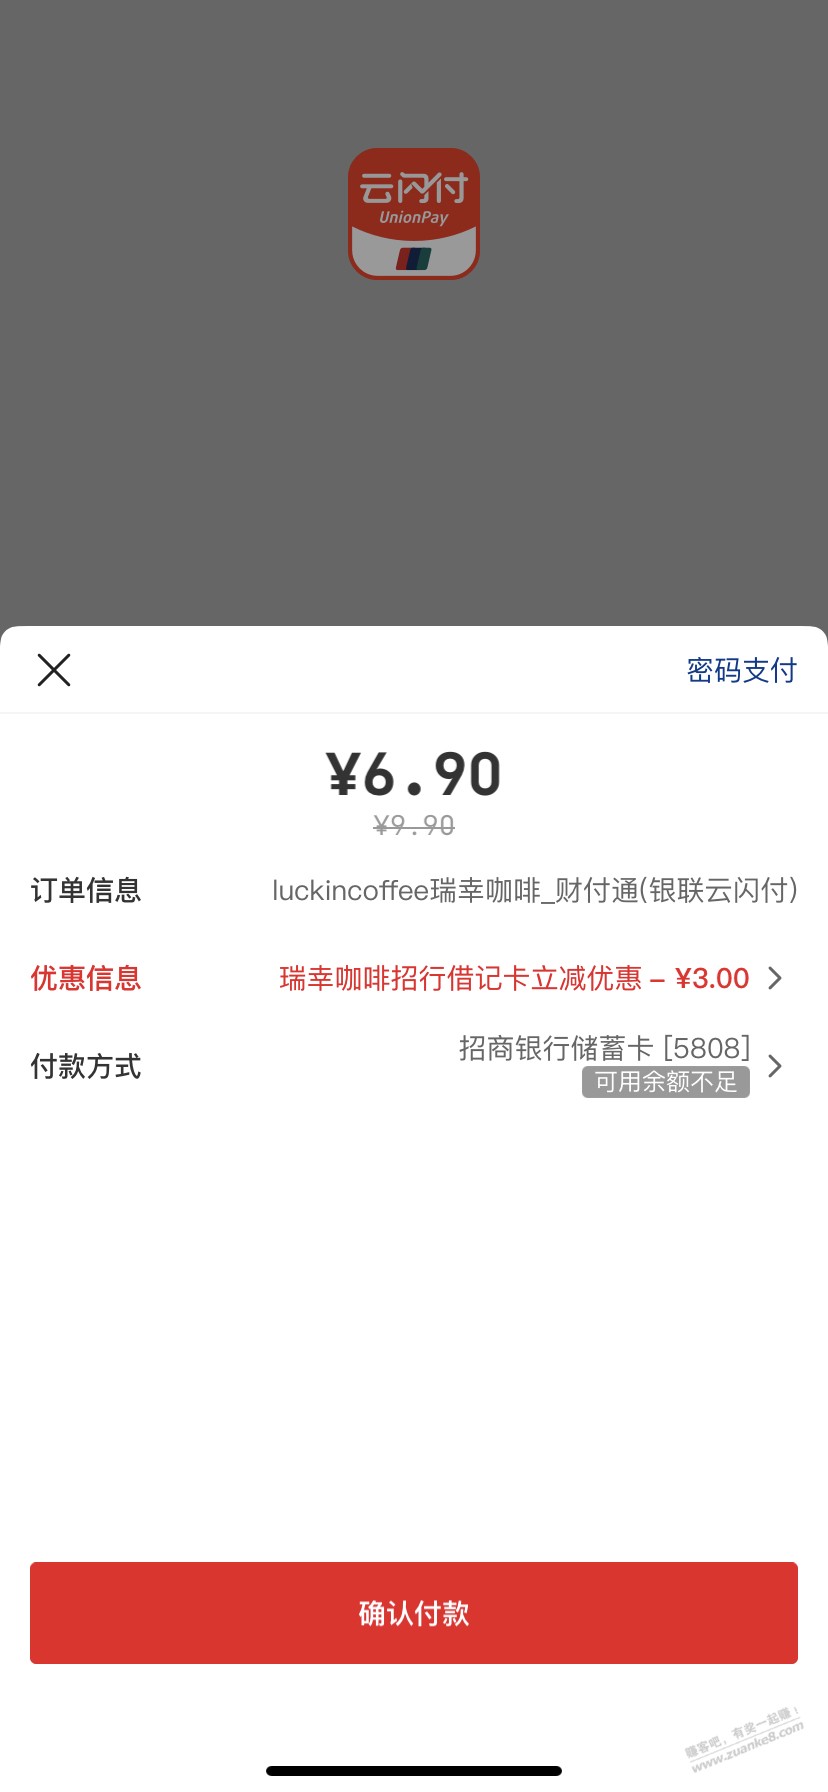 瑞幸招行借记卡减3元-惠小助(52huixz.com)